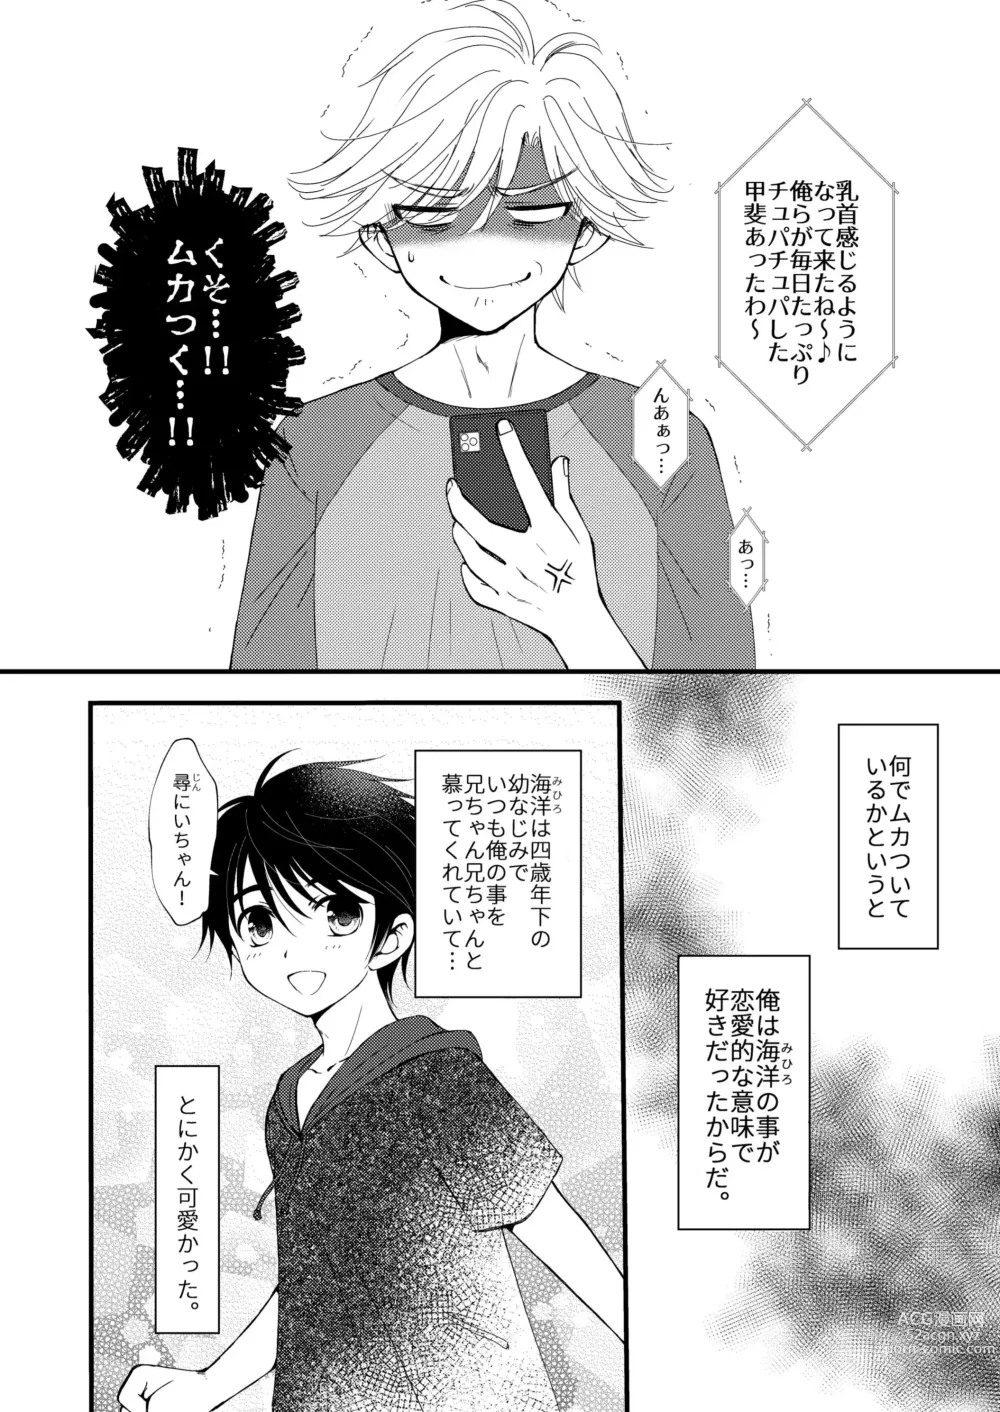 Page 6 of doujinshi Oitekita Umi